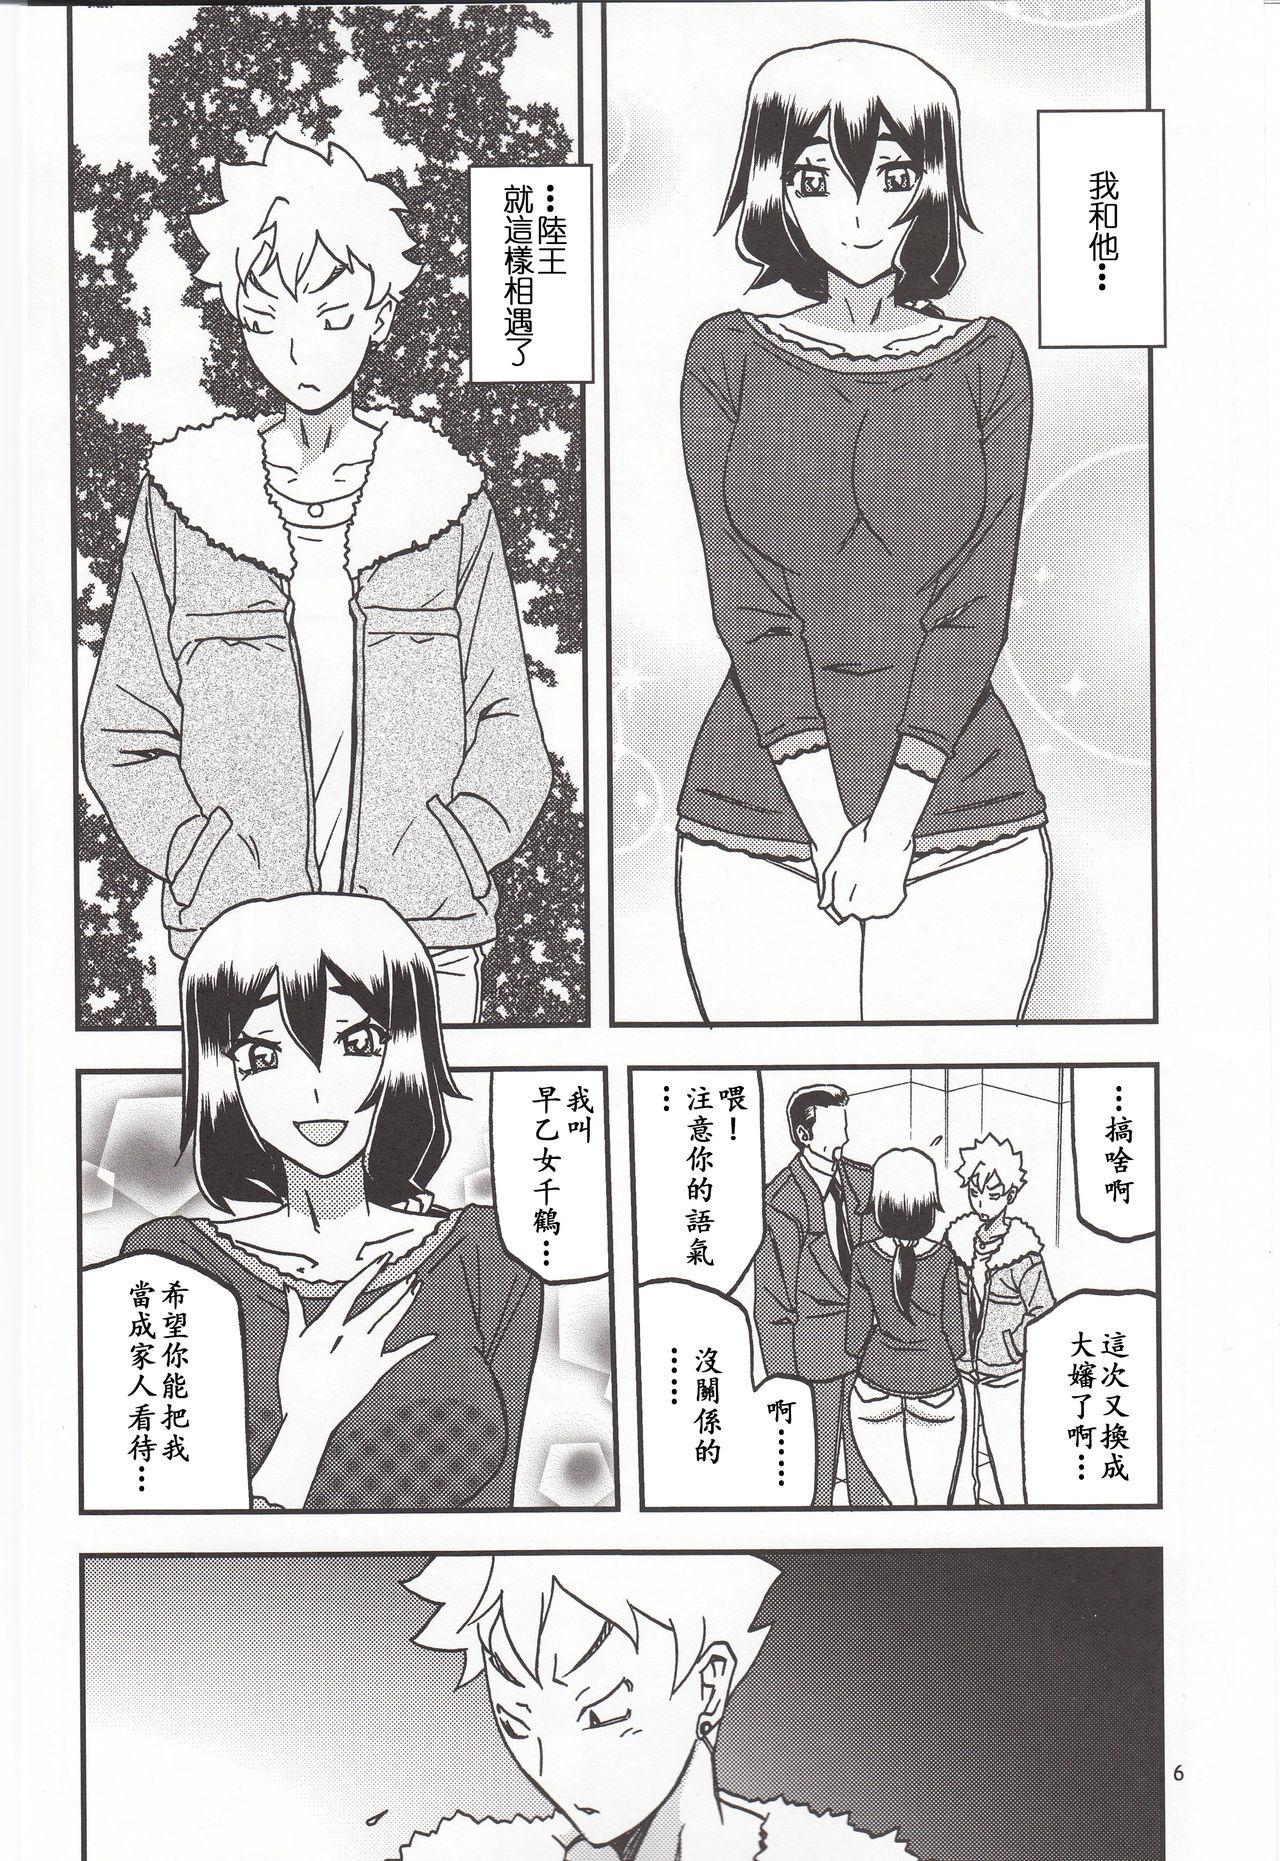 Namorada Akebi no Mi - Chizuru Katei - Akebi no mi Gayporn - Page 5